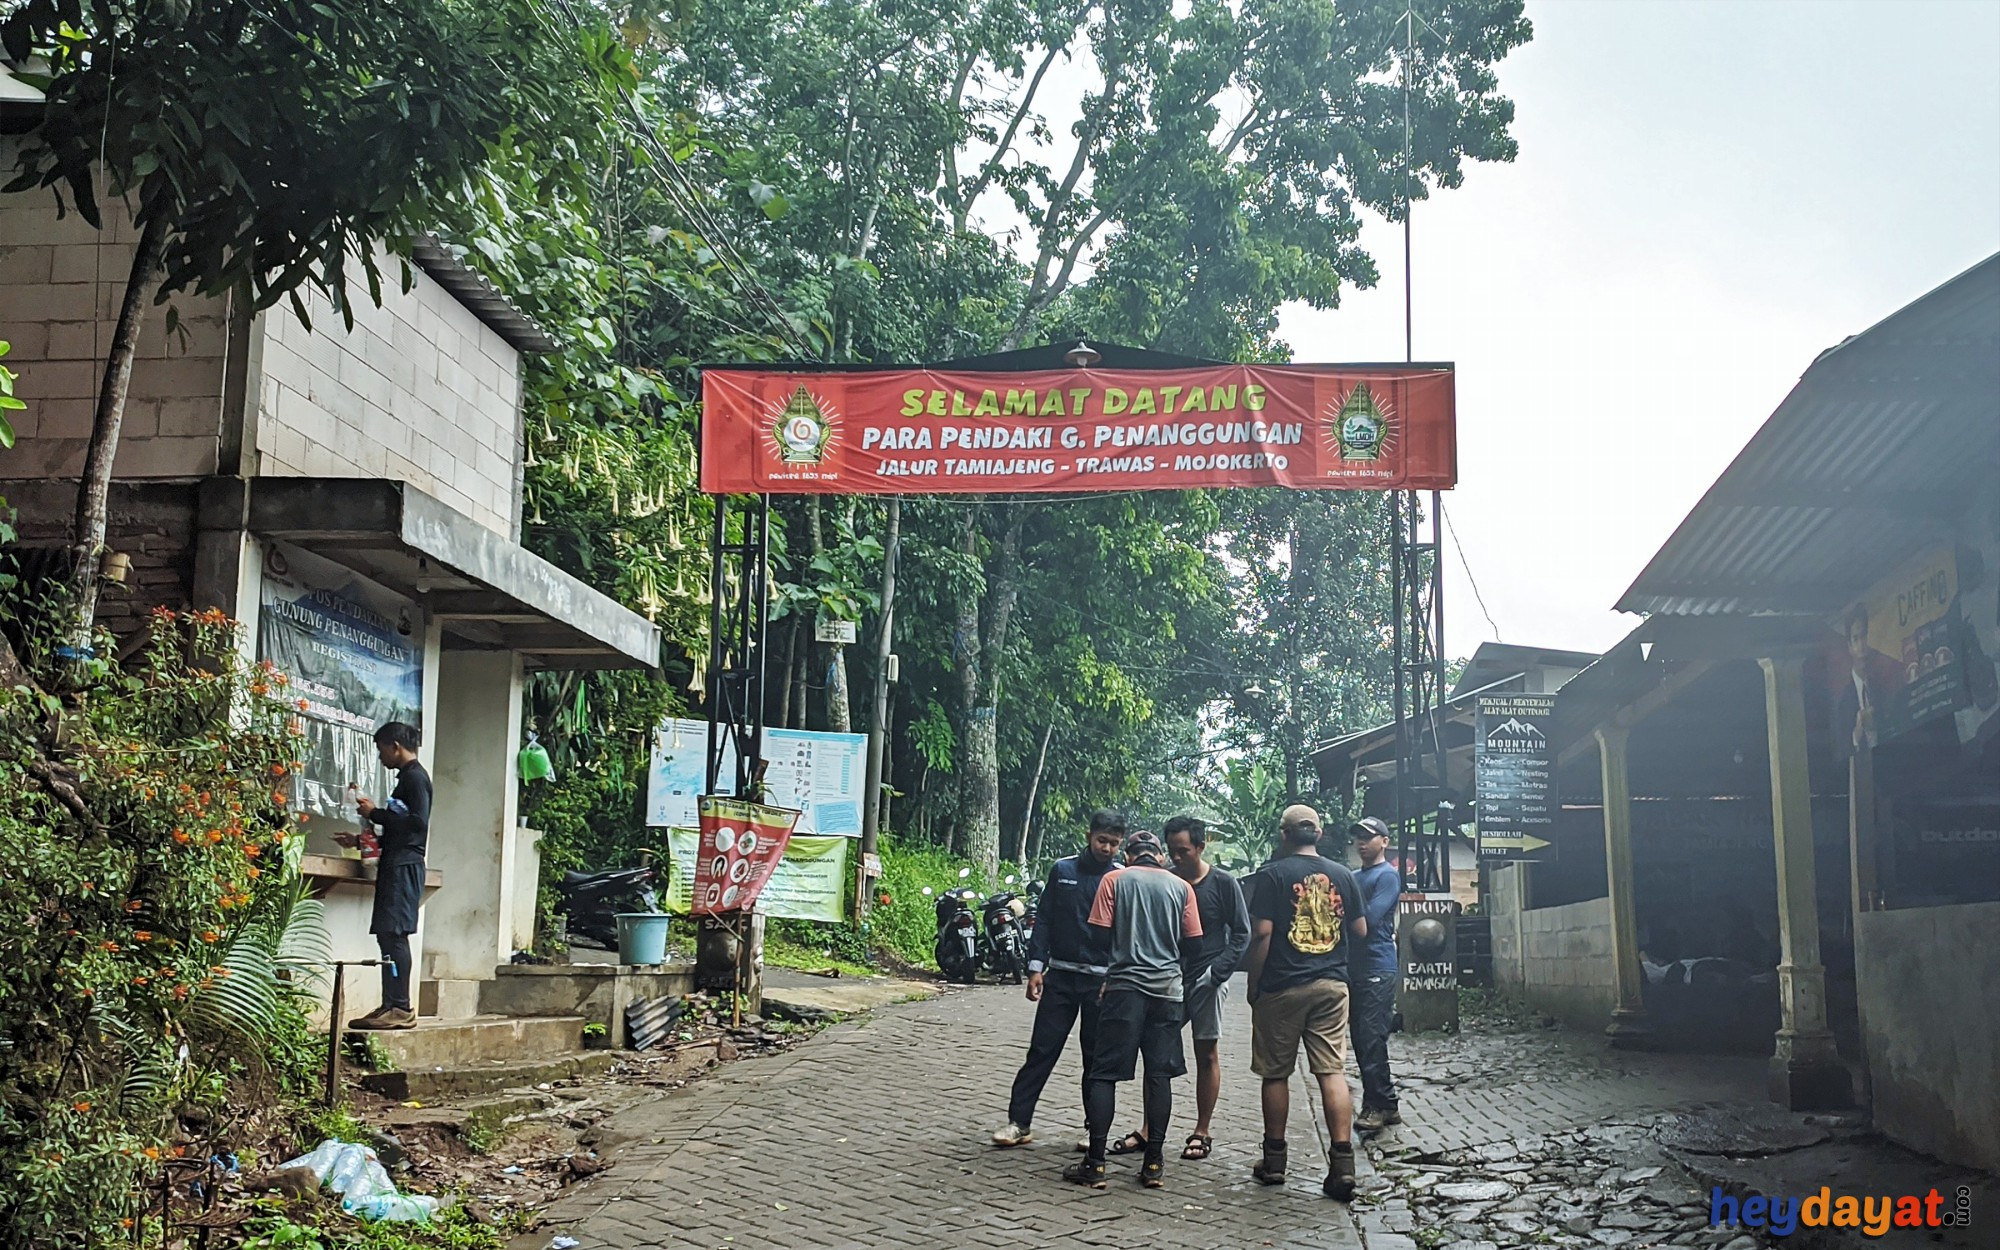 Basecamp Gunung Penanggungan Via Tamiajeng